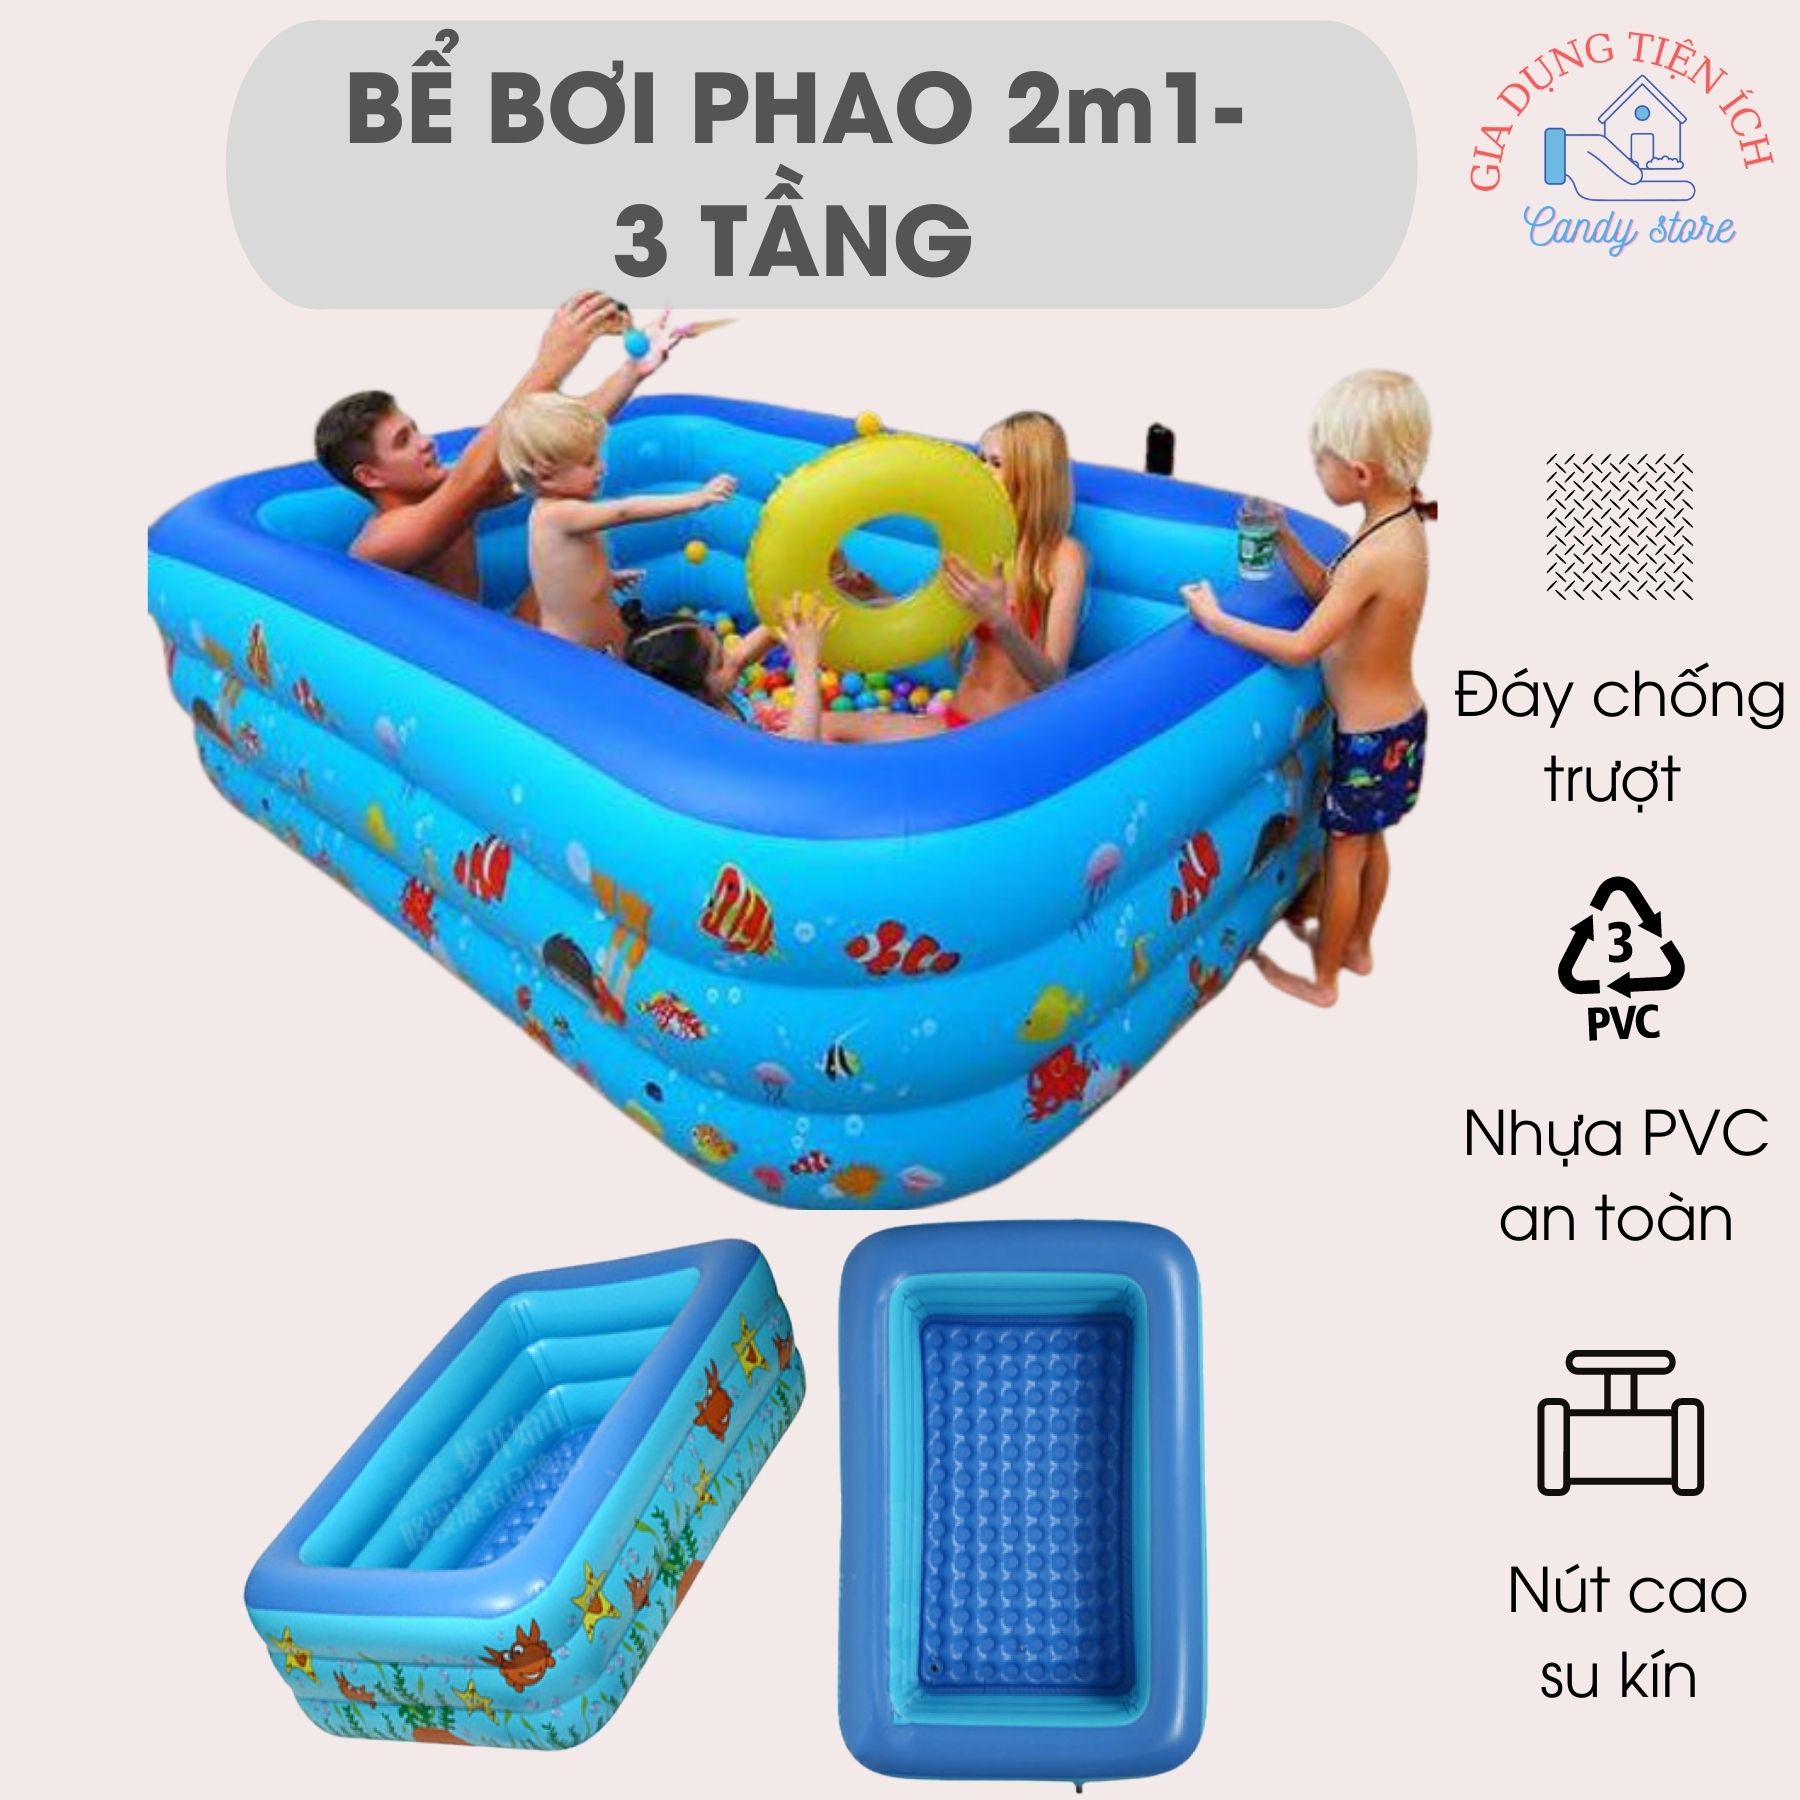 Bể bơi phao cho bé 3 tầng kích thước 2m1 , hồ bơi phao trẻ em và gia đình có đáy chống trượt độ đàn hồi cao, chất liệu PVC an toàn cho trẻ